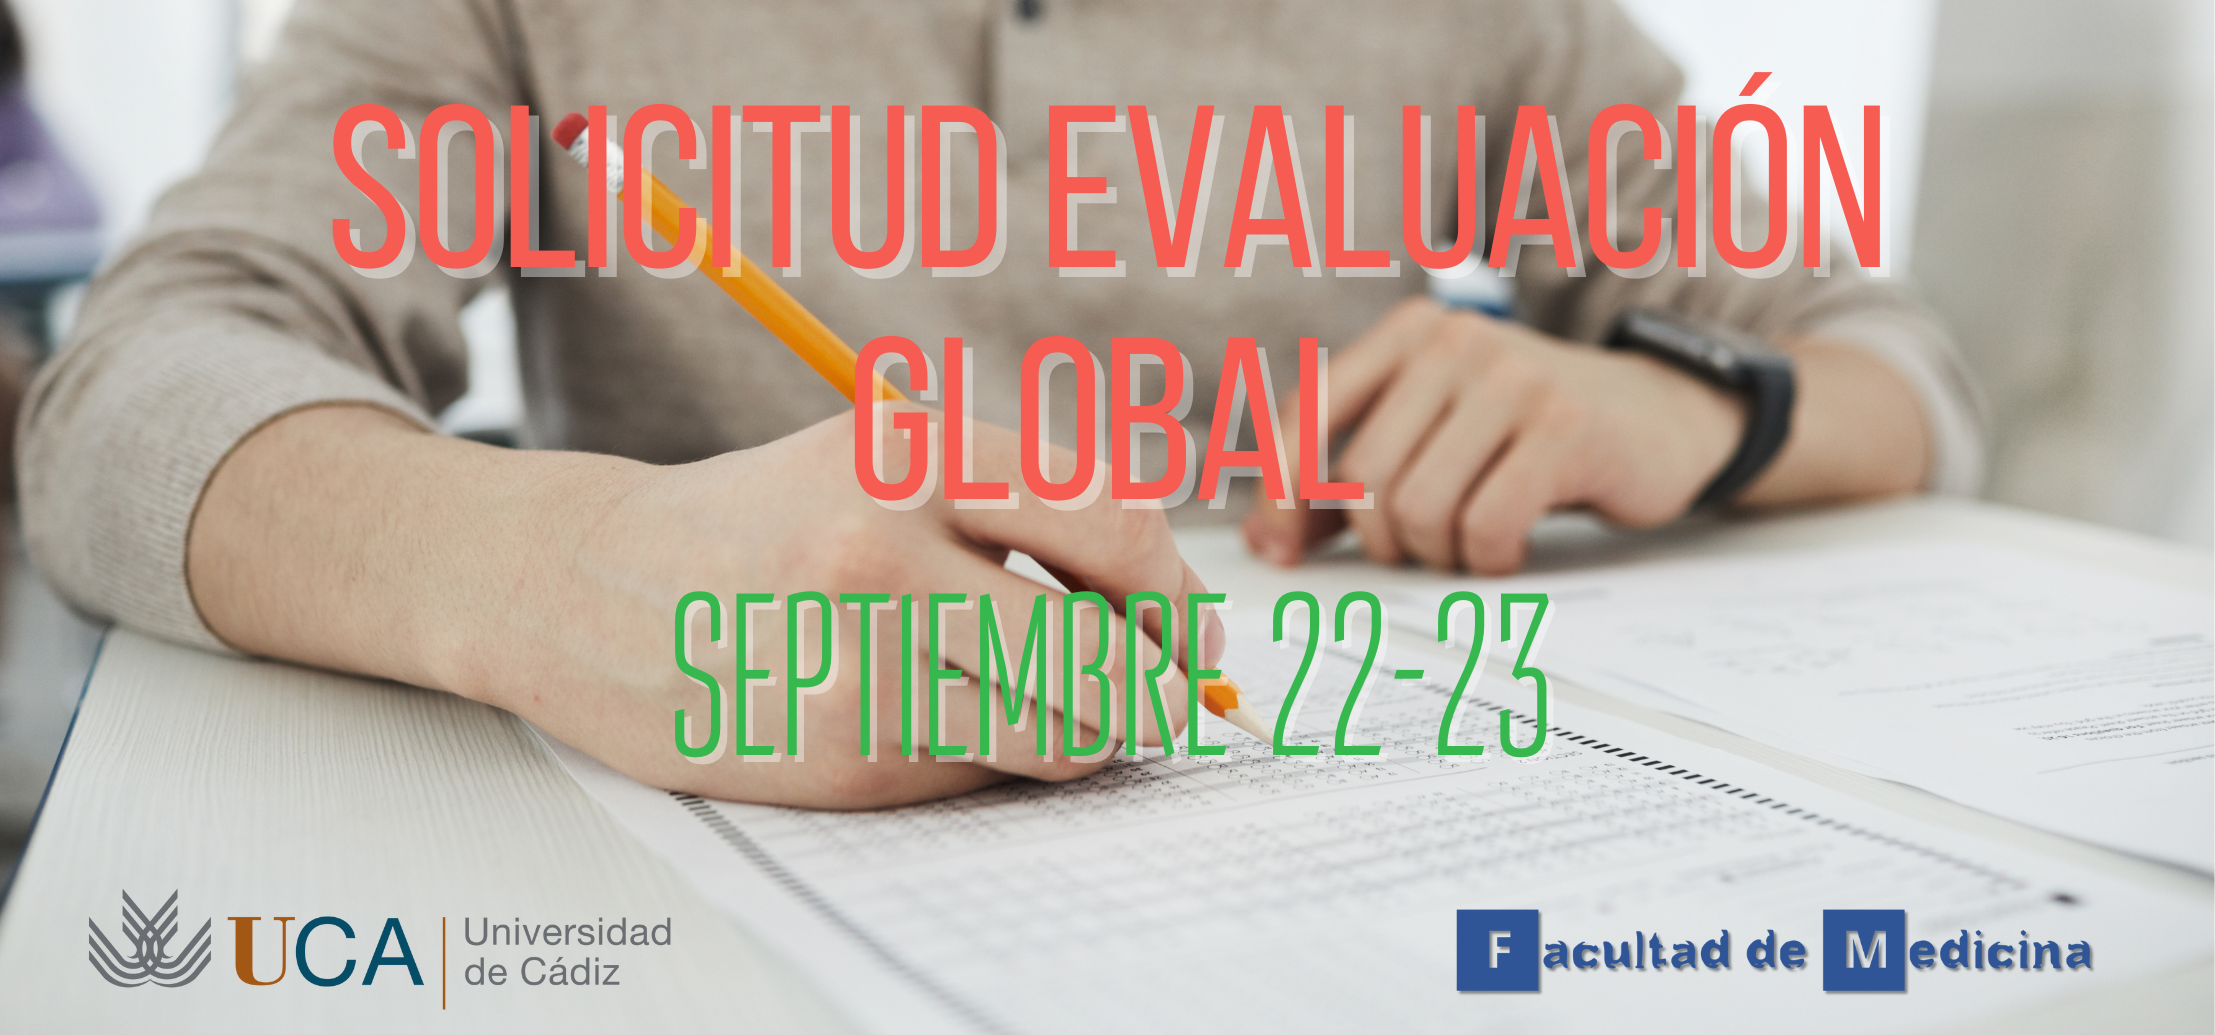 Solicitud Evaluación Global para la convocatoria de septiembre 22-23